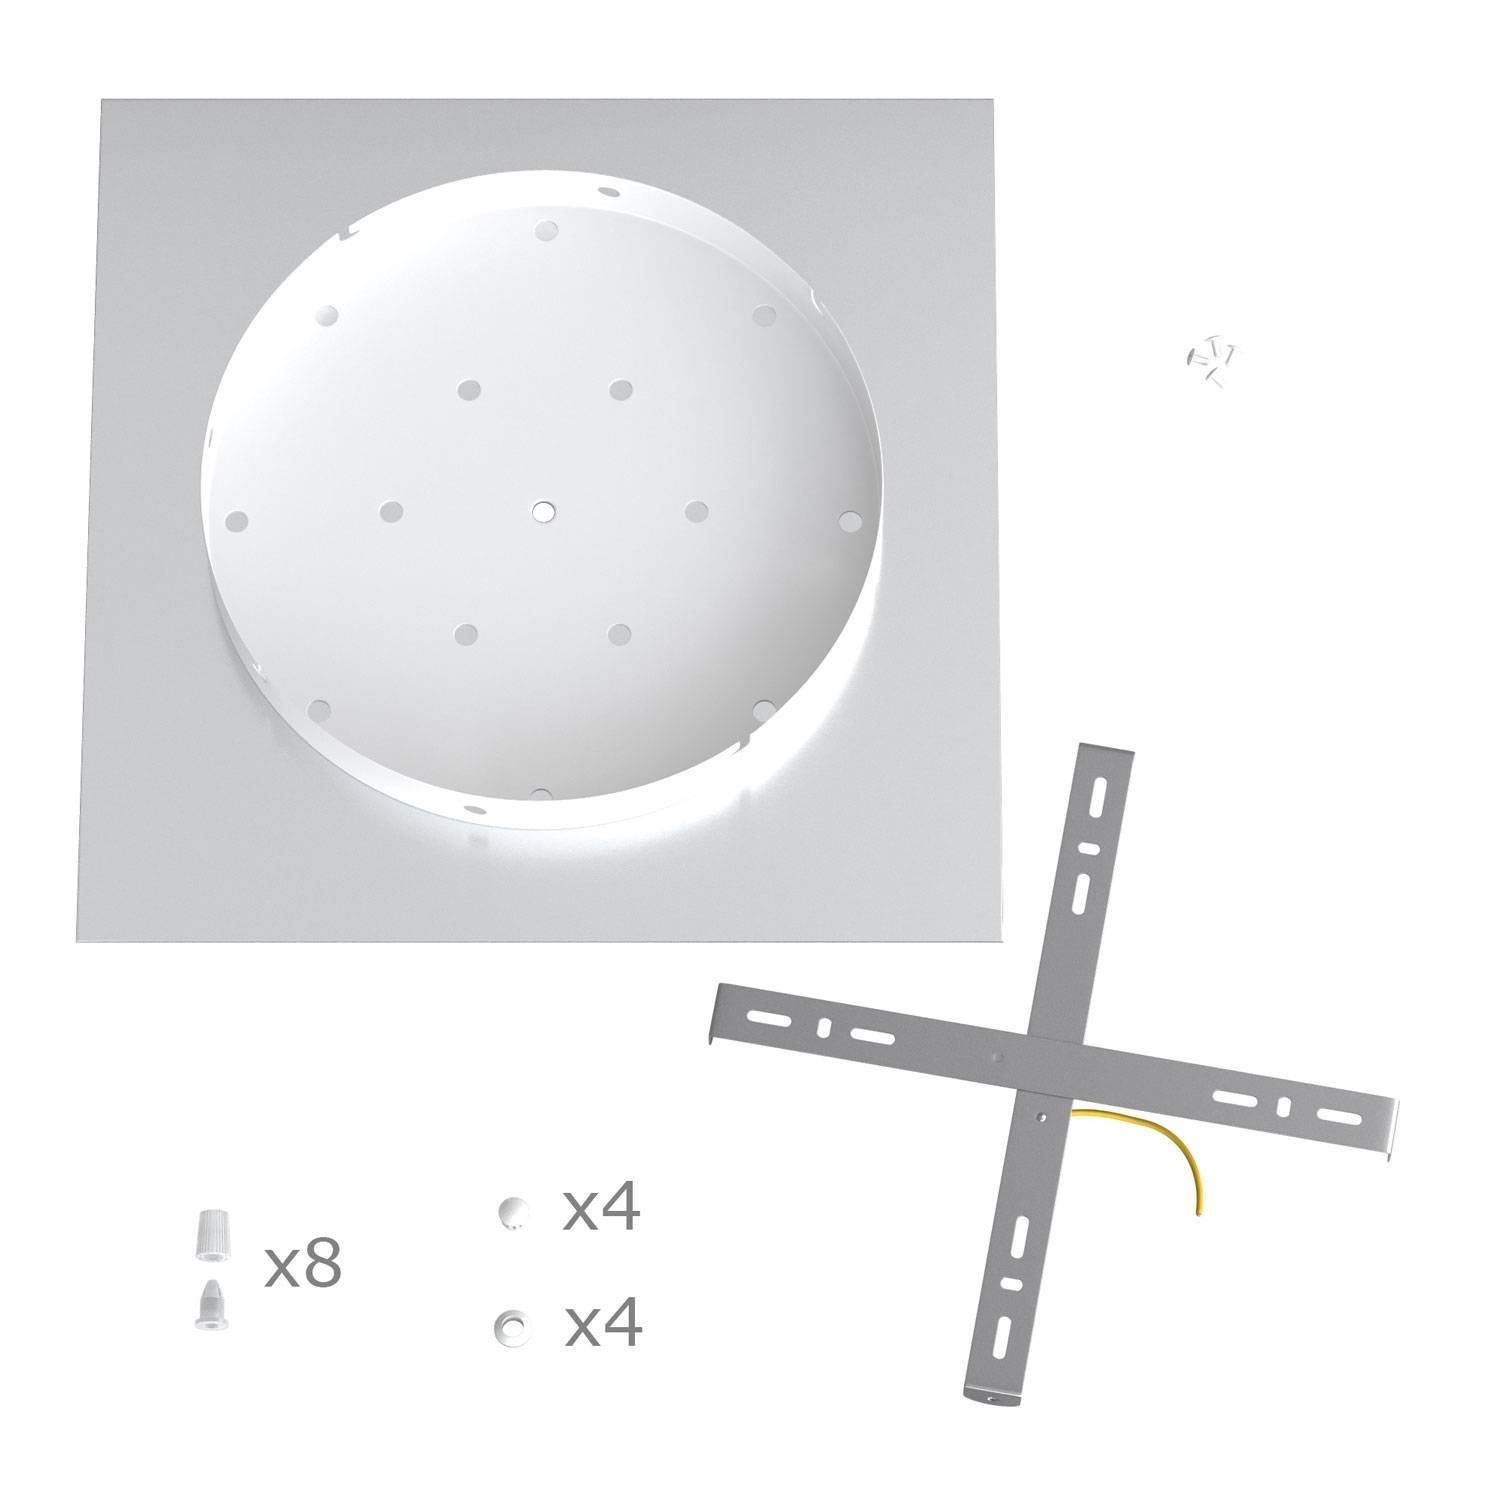 Quadratisches XXL 8-Loch und 4 Seitenlöchern Lampenbaldachin Kit, Rose-One-Abdeckung, 400 mm